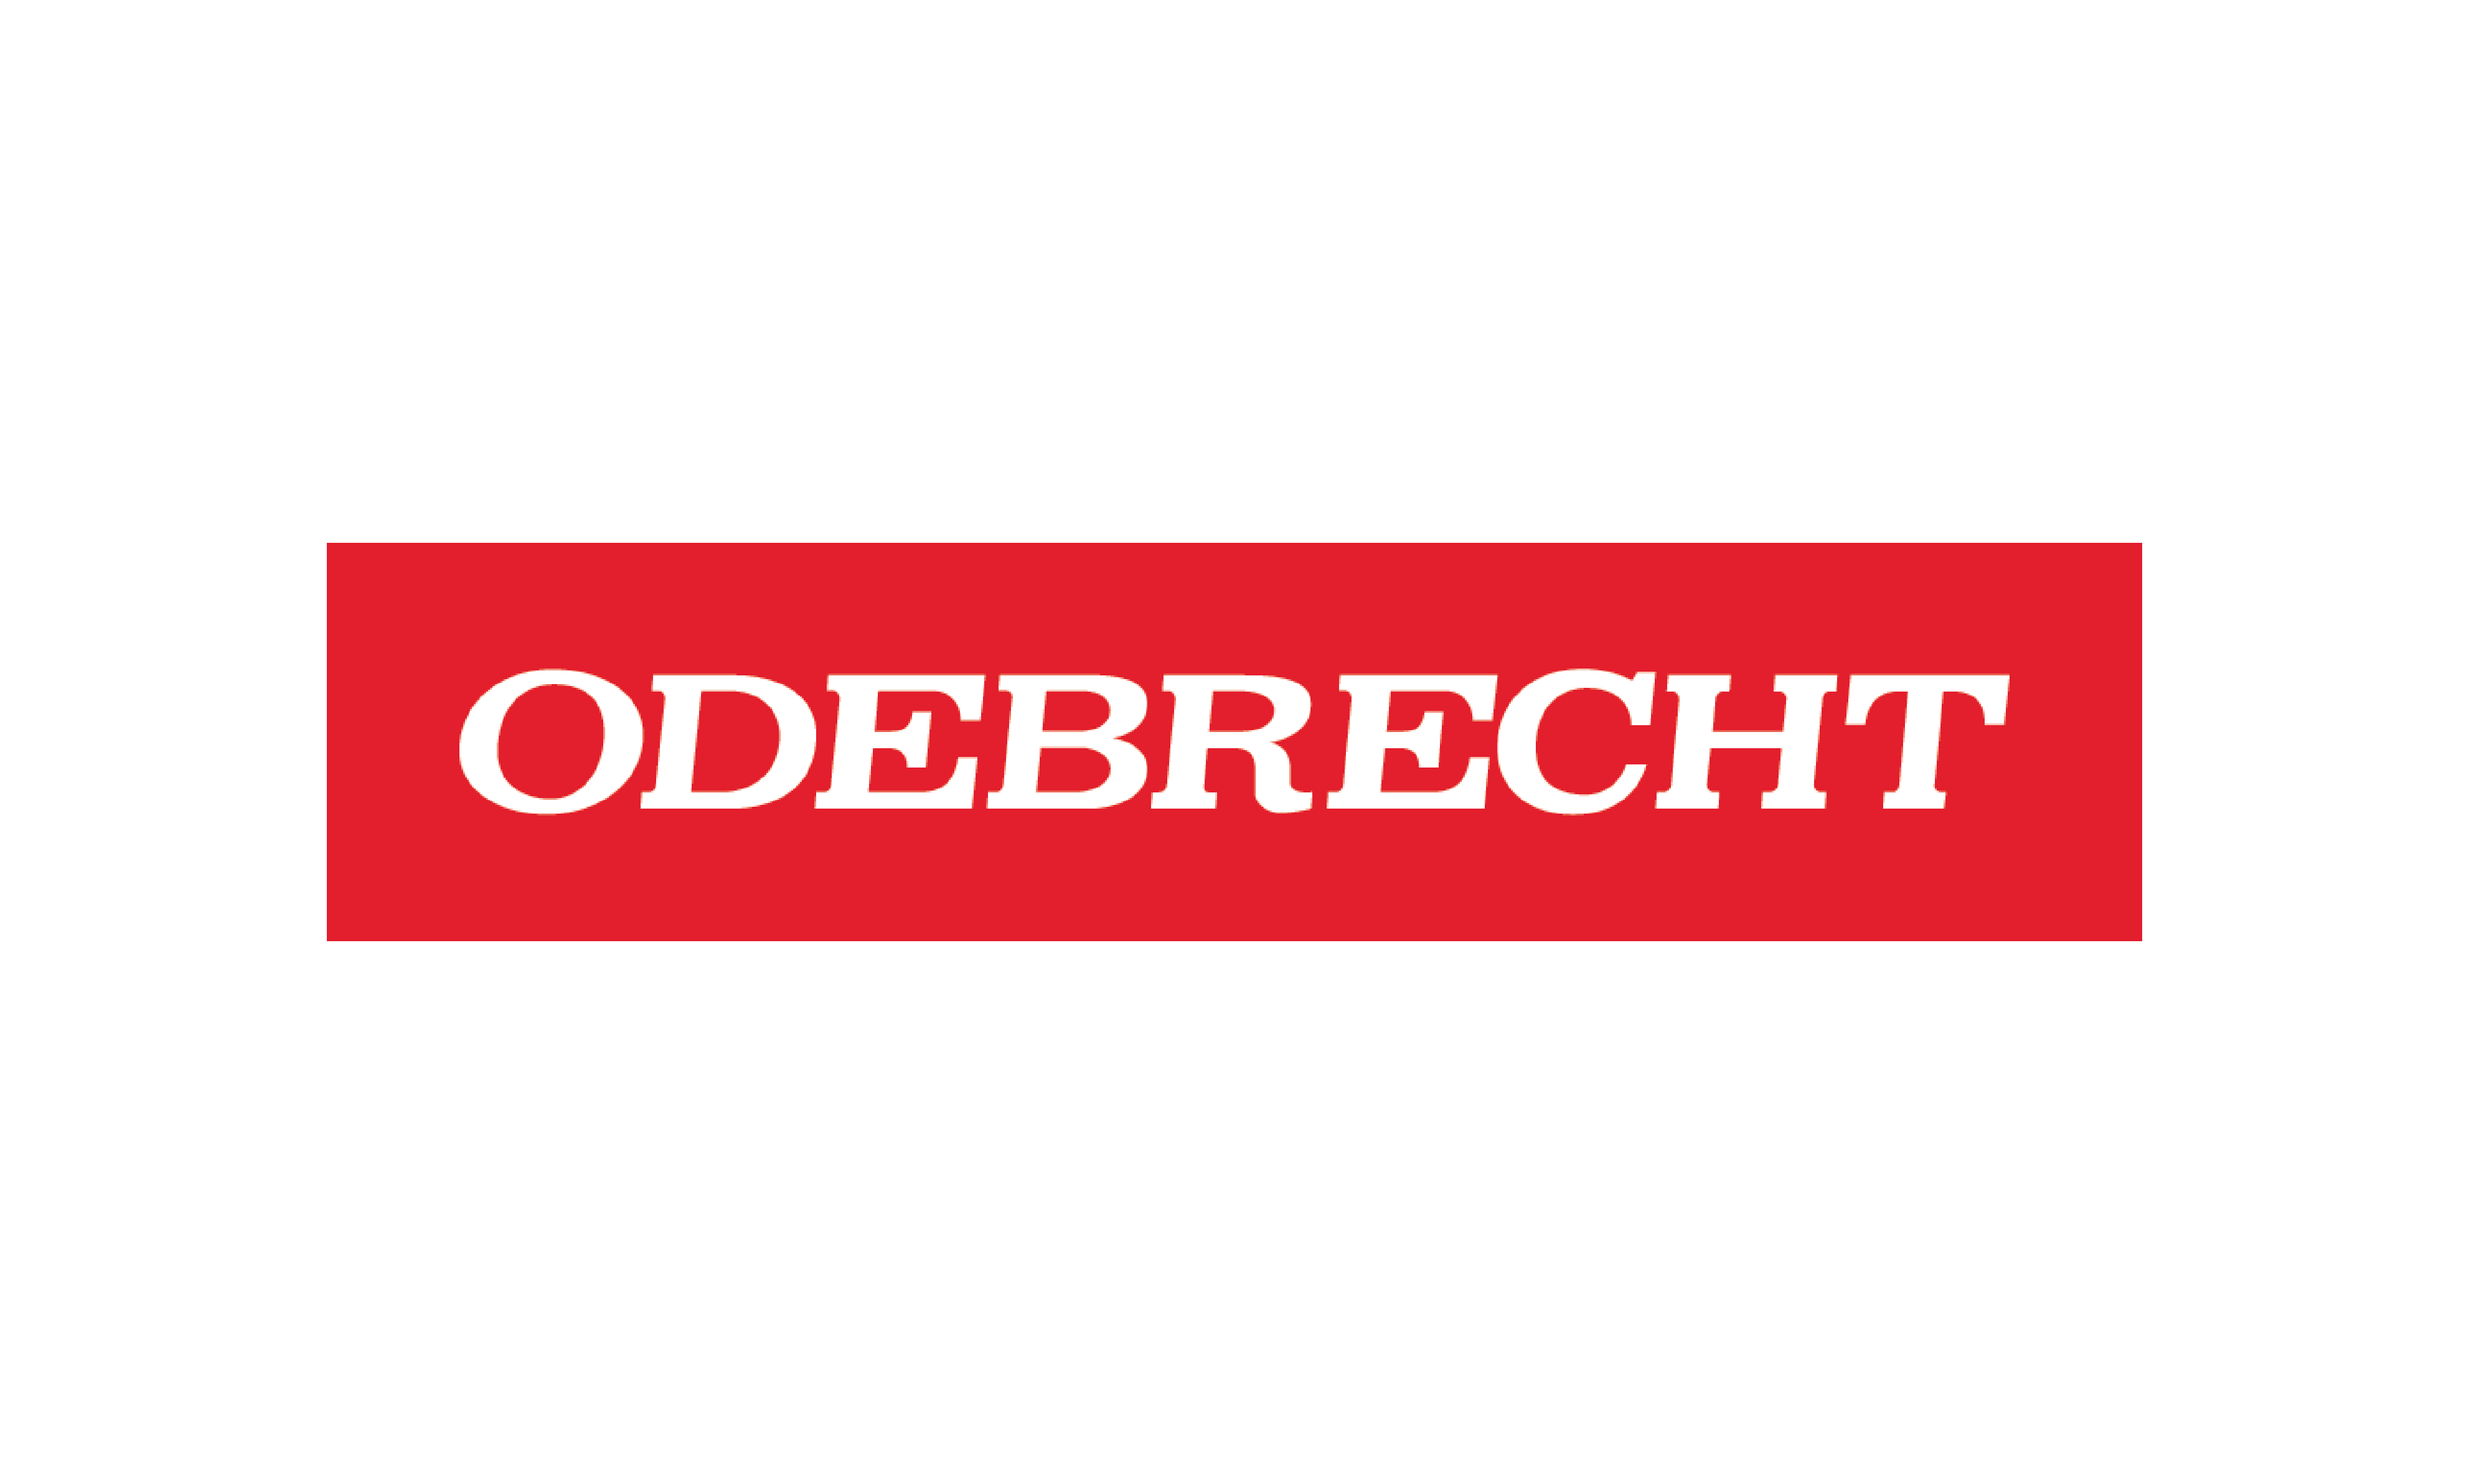 Cliente Odebrecht